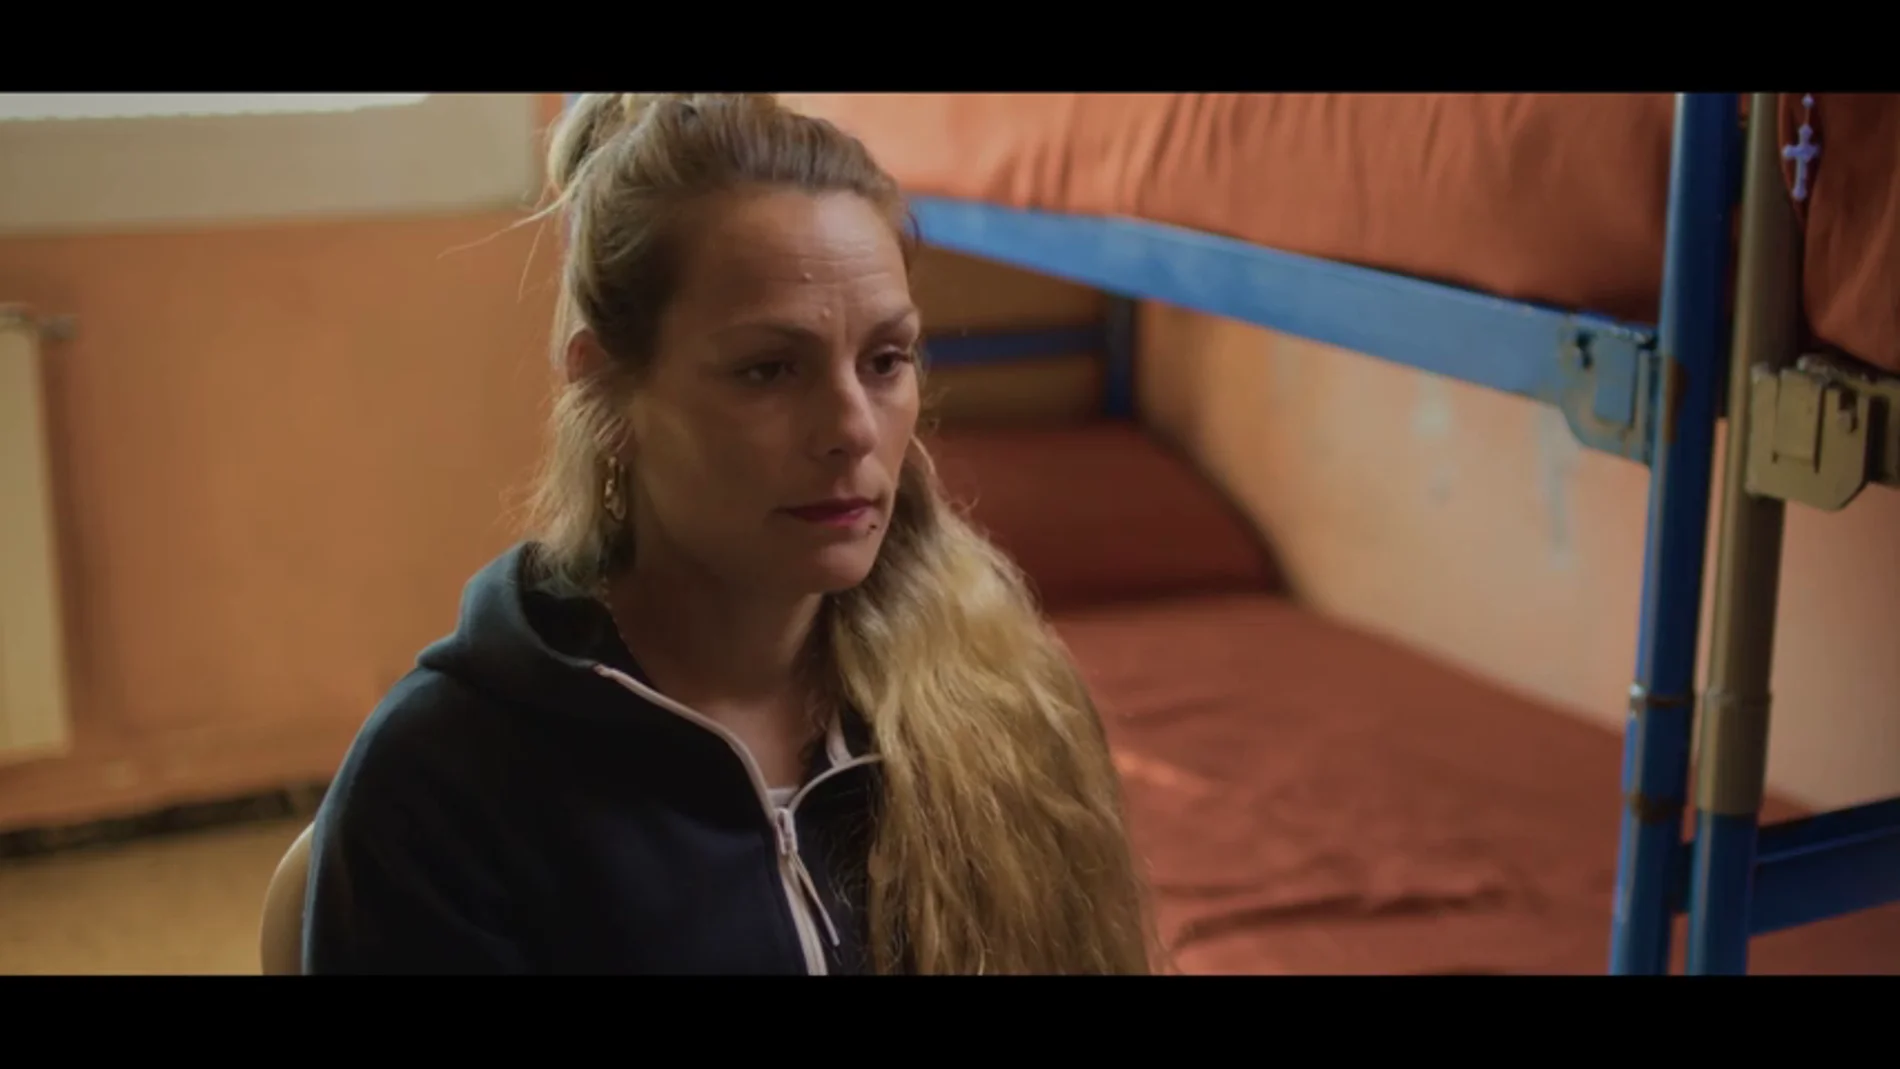 Una reclusa cuenta a Évole cómo la cárcel le ha cambiado su vida: "Yo no quiero esto para mis hijas, se acabó"